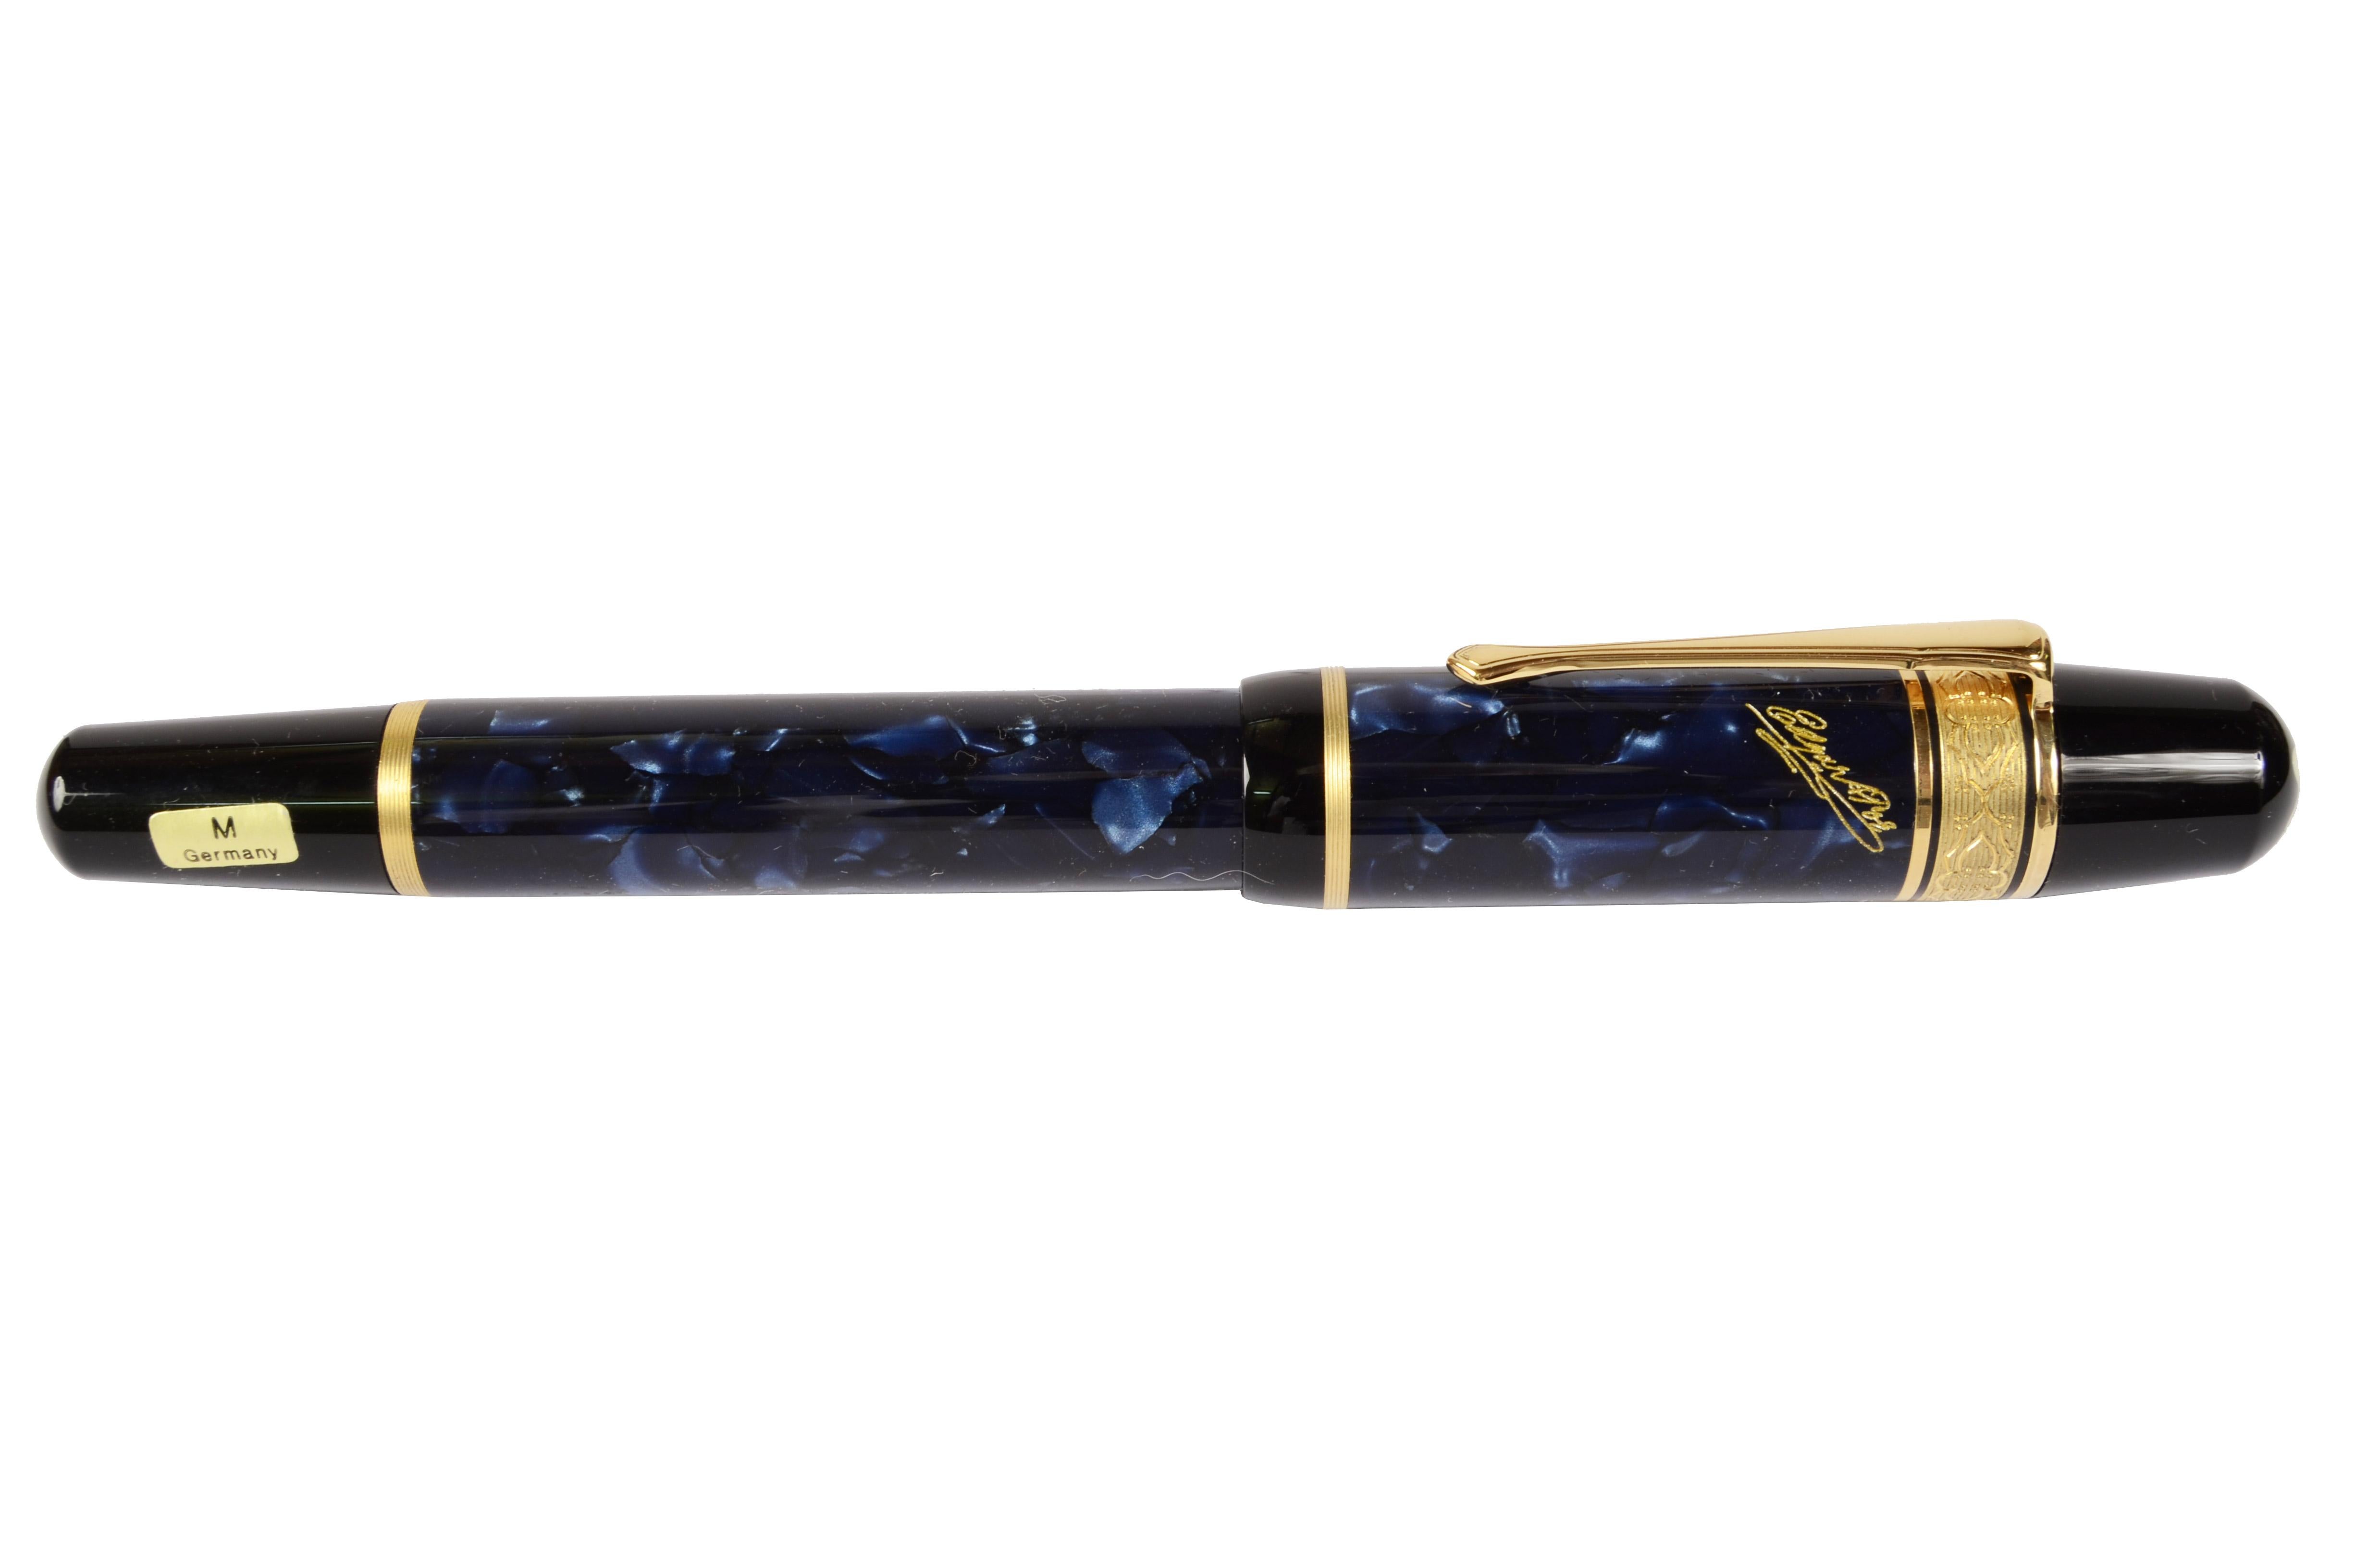 Polyester Edgar Allan Poe Montblanc - Édition limitée des années 1998  Fountain Pen Ballpoint crayon stylo